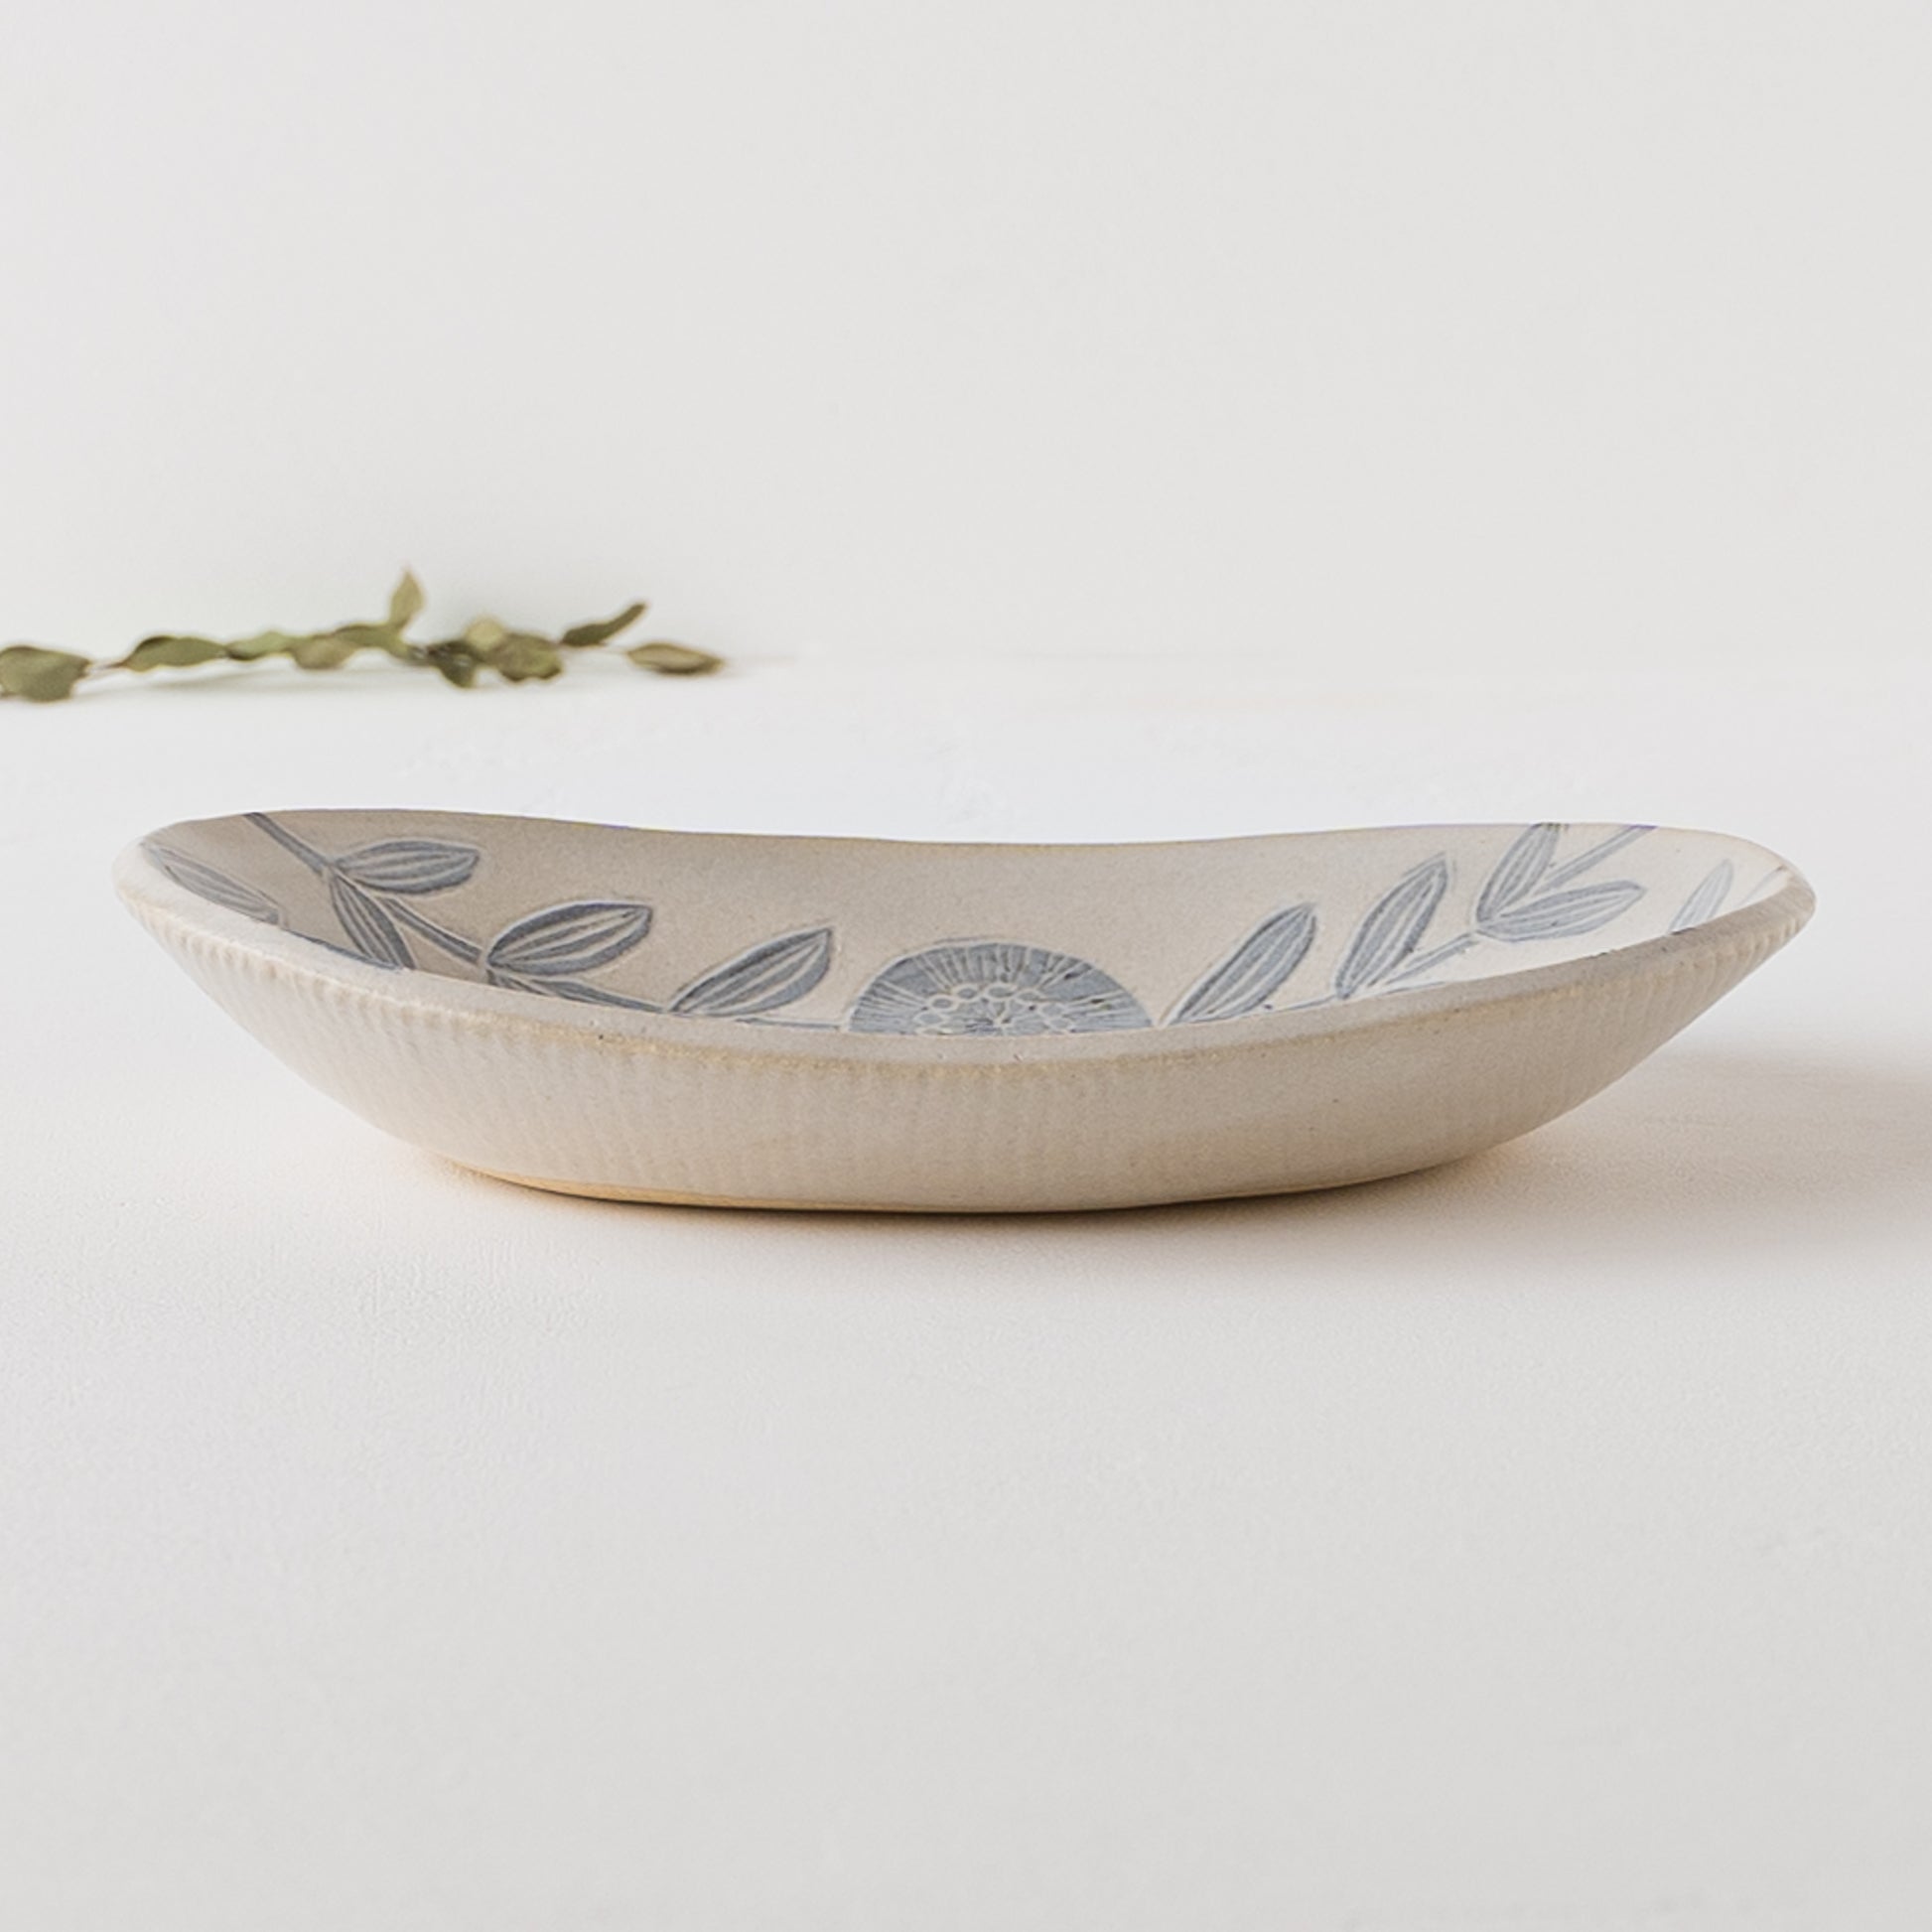 アンティーク感漂う風合いが素敵な松崎麗さんの楕円皿